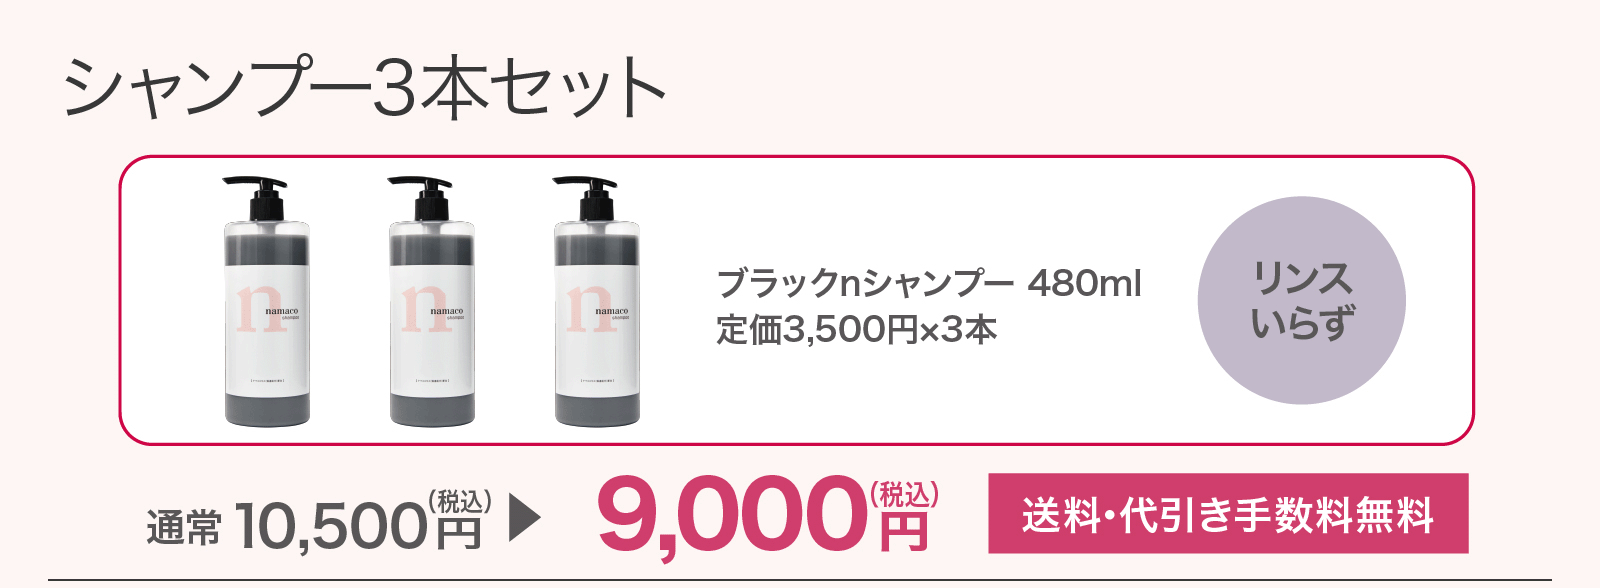 【SALE】シャンプー3本セット 9,000円